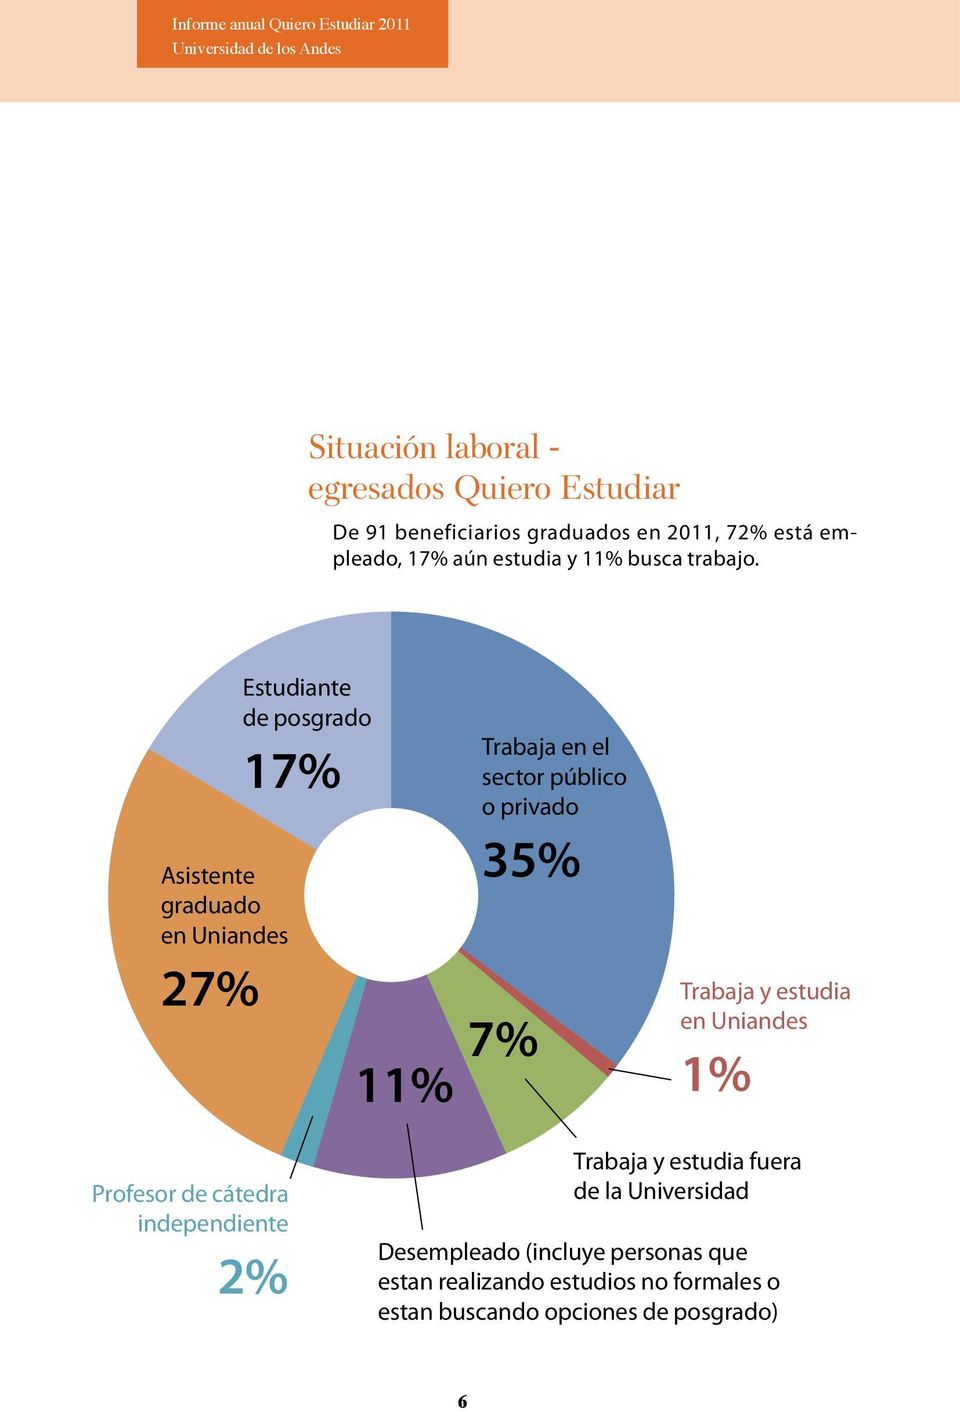 Asistente graduado en Uniandes 27% Estudiante de posgrado 7% 7% % Trabaja en el sector público o privado 35% Trabaja y estudia en